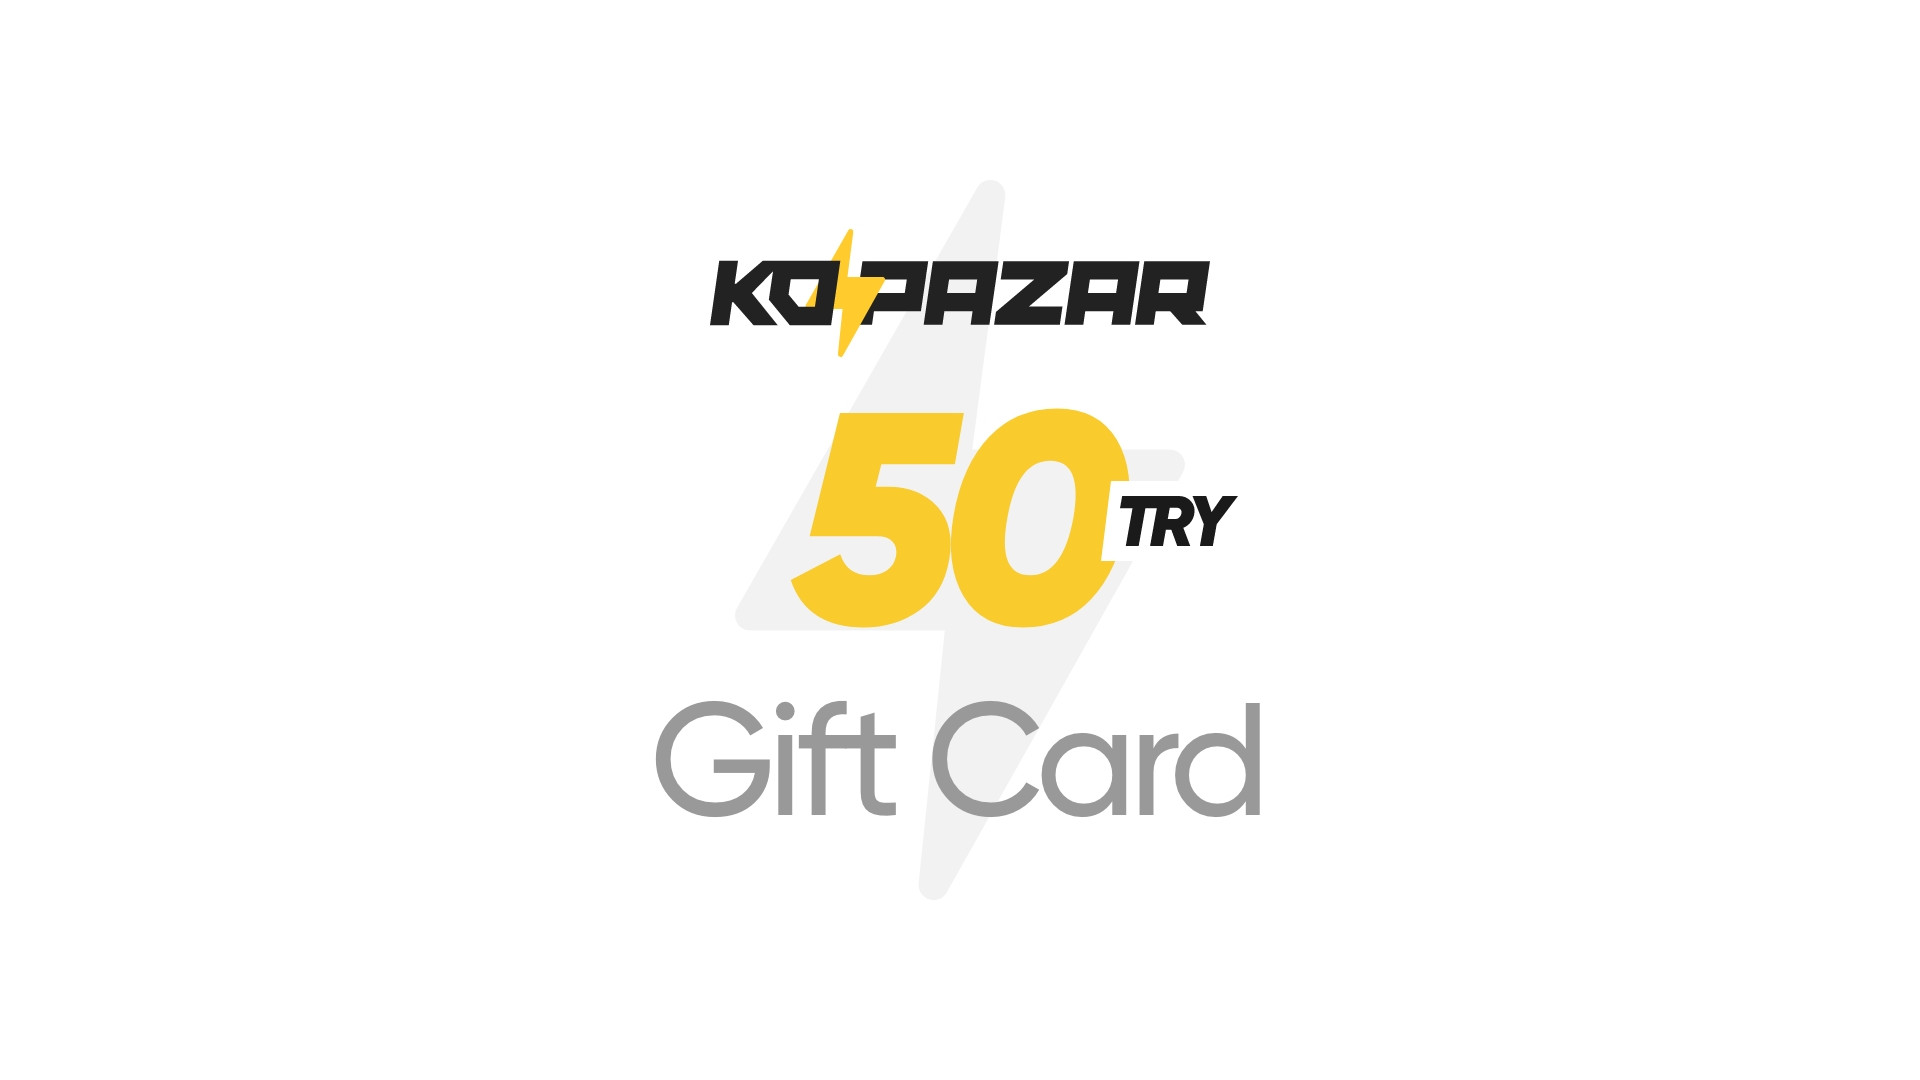 [$ 2.09] Kopazar 50 TRY Gift Card